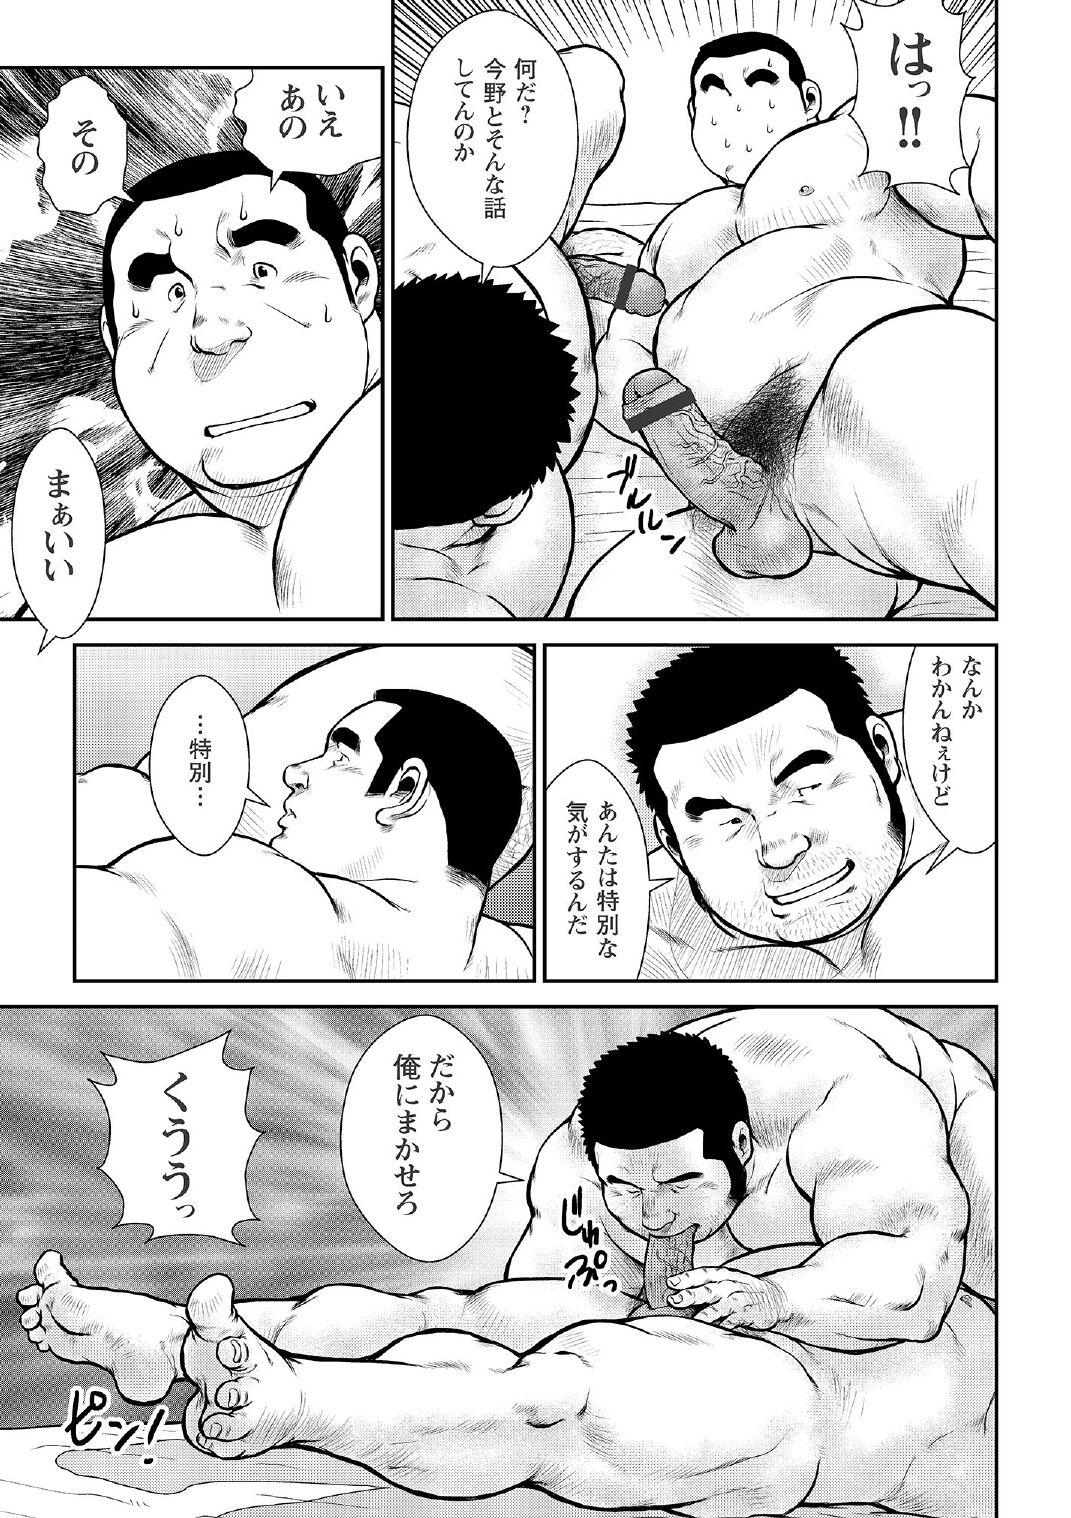 [Ebisubashi Seizou] Ebisubashi Seizou Tanpen Manga Shuu 2 Fuuun! Danshi Ryou [Bunsatsuban] PART 2 Bousou Hantou Taifuu Zensen Ch. 1 + Ch. 2 [Digital] 44